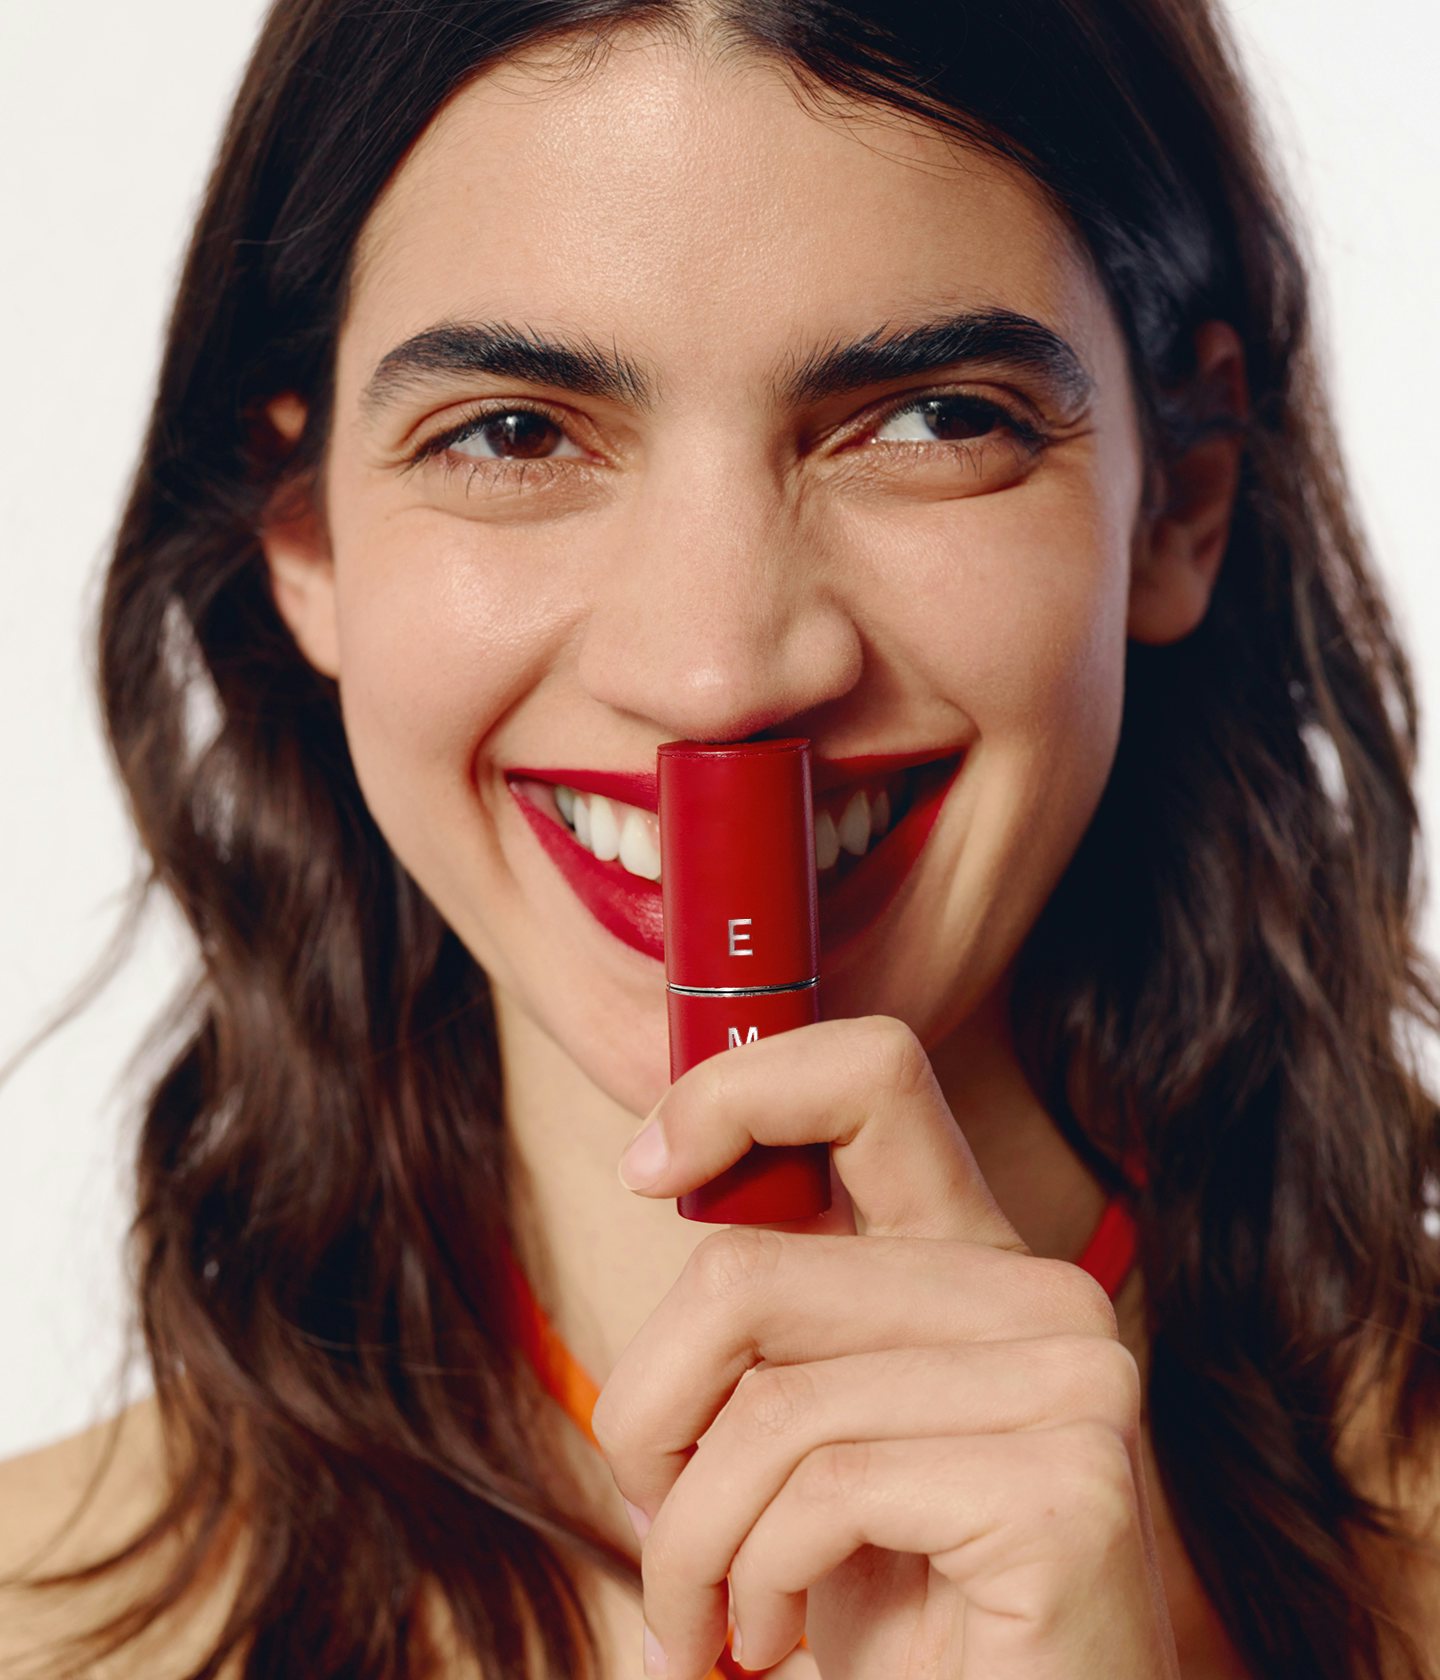 La bouche rouge campagne "funny faces" mannequin portant la teinte de rouge à lèvres Pop Art Red avec l'étui en cuir rouge